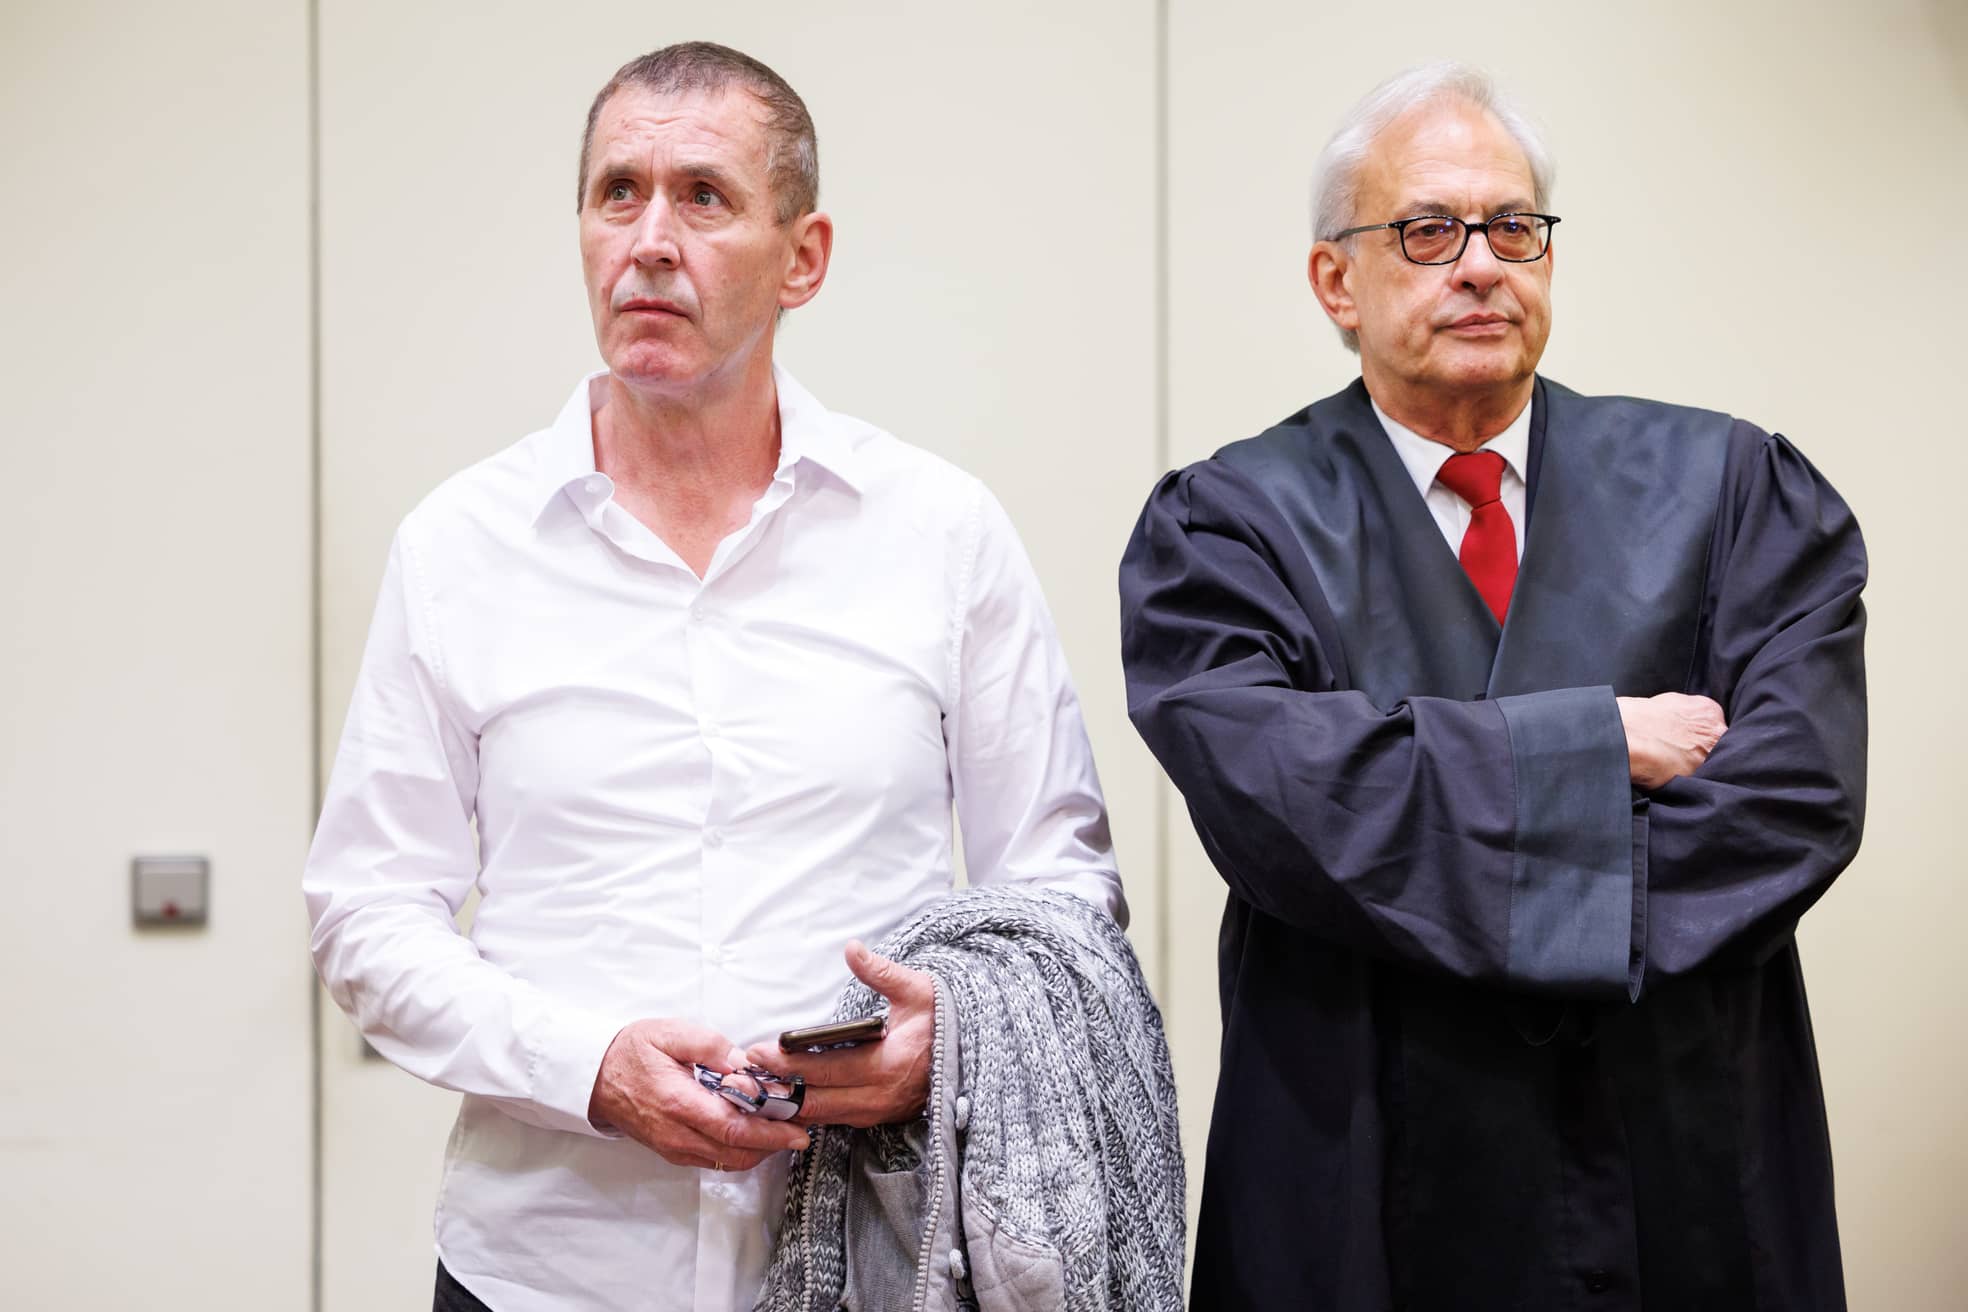 Er wurde 2012 zu lebenslanger Haft verurteilt, weil er eine Rentnerin in ihrer Badewanne ermordet haben soll.
Jetzt hofft Manfred Genditzki (links), hier neben seinem Anwalt Klaus Wittmann, auf Freispruch.